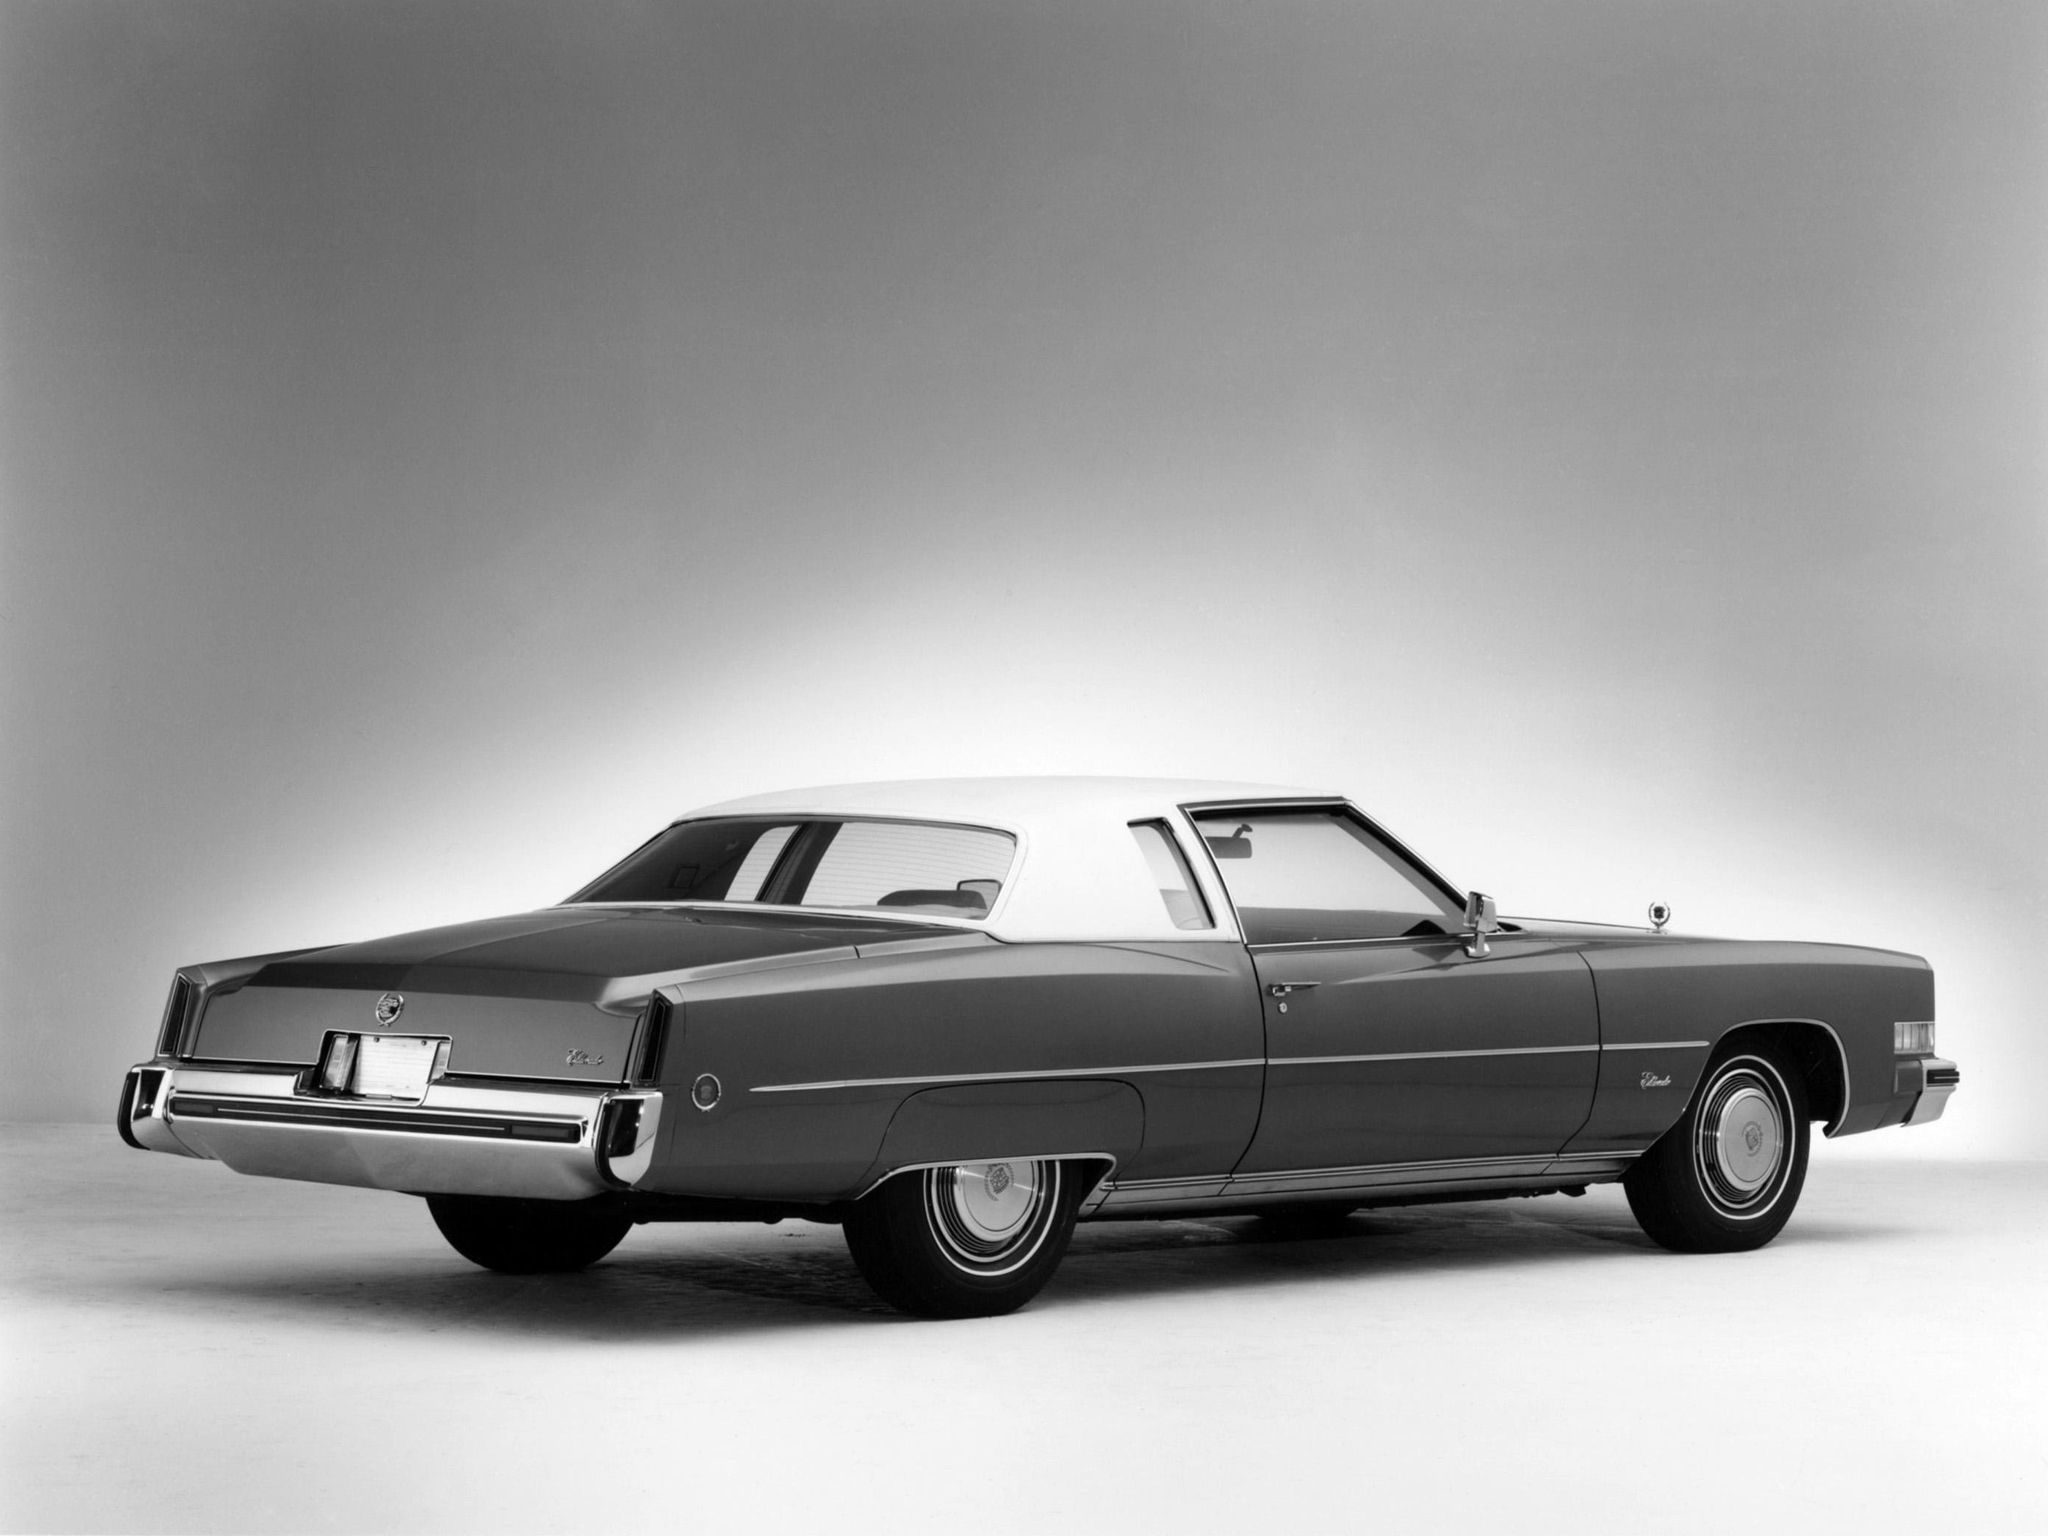 Cadillac Eldorado 1959 Pink - image #133